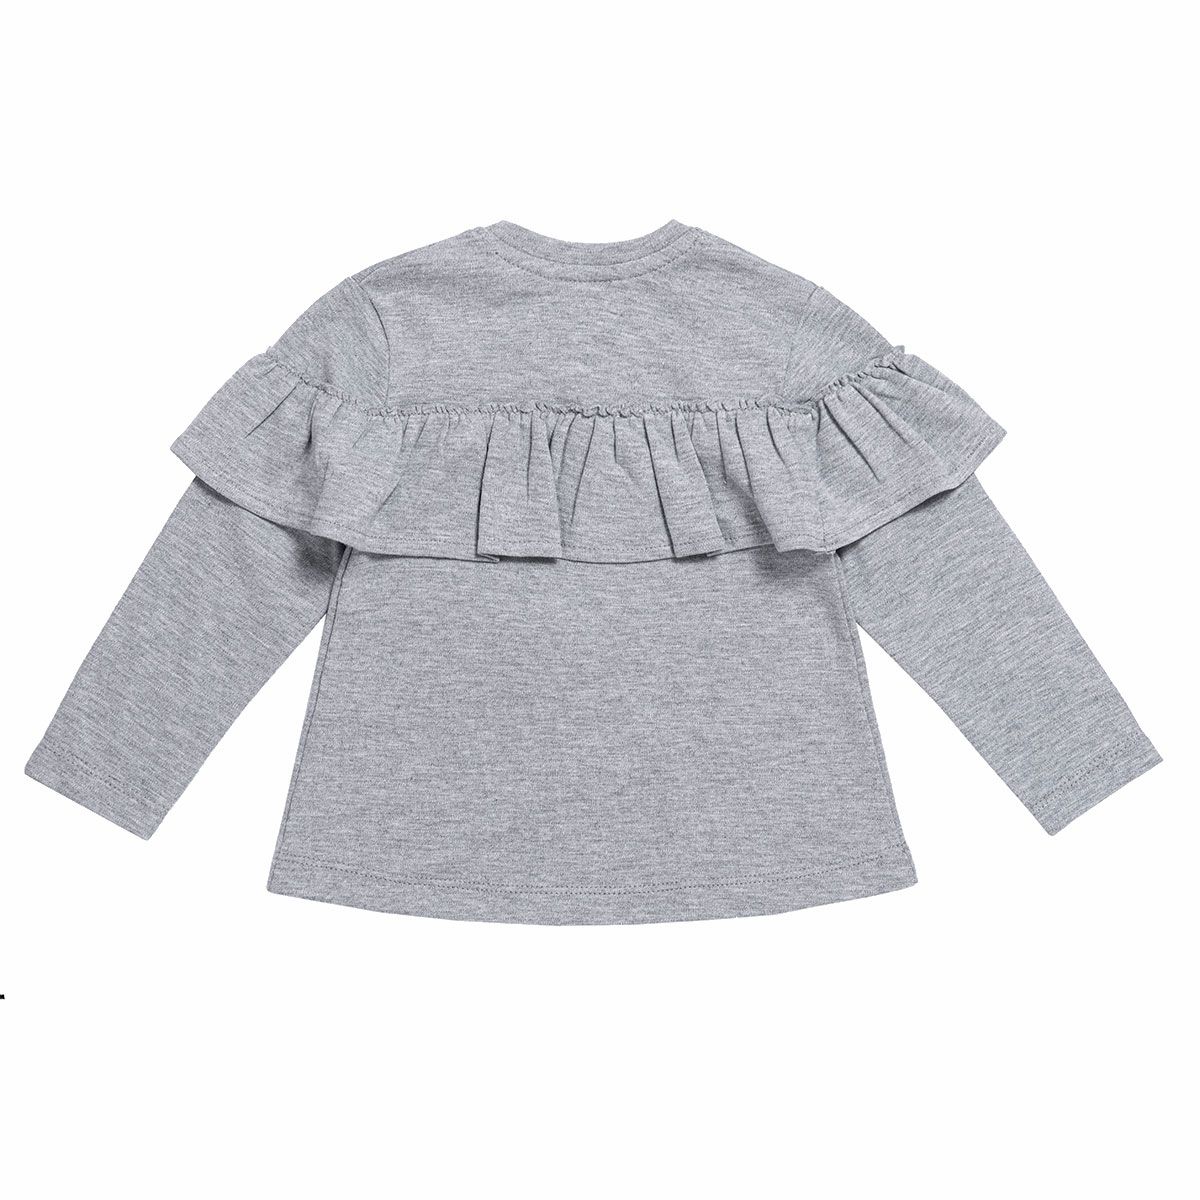 ست تی شرت و شلوار نوزادی فیورلا مدل 21519 -  - 4